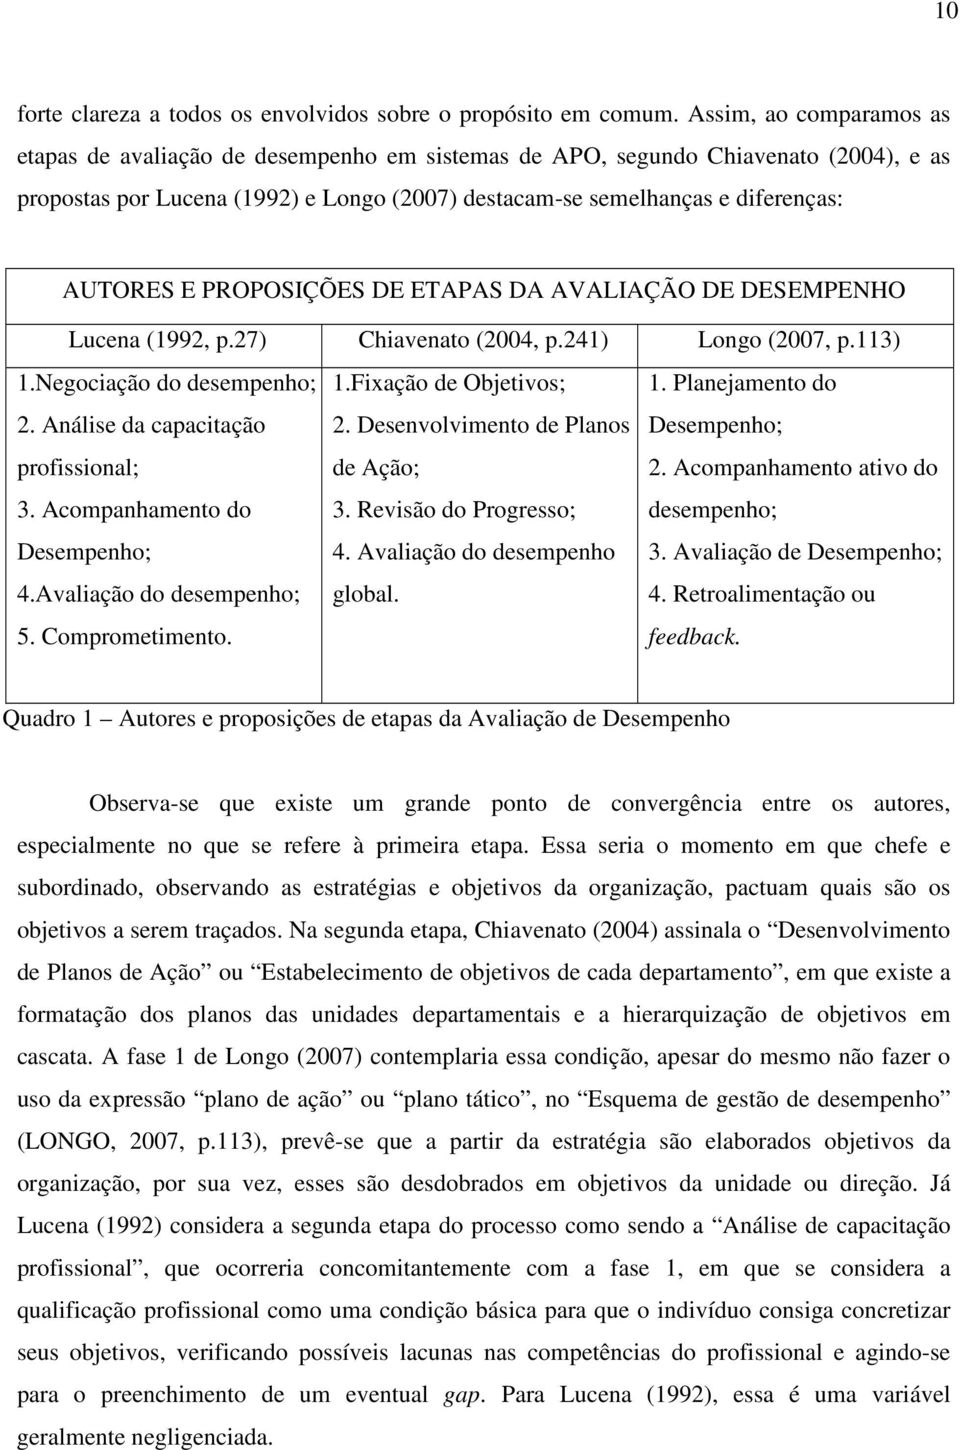 E PROPOSIÇÕES DE ETAPAS DA AVALIAÇÃO DE DESEMPENHO Lucena (1992, p.27) Chiavenato (2004, p.241) Longo (2007, p.113) 1.Negociação do desempenho; 1.Fixação de Objetivos; 1. Planejamento do 2.